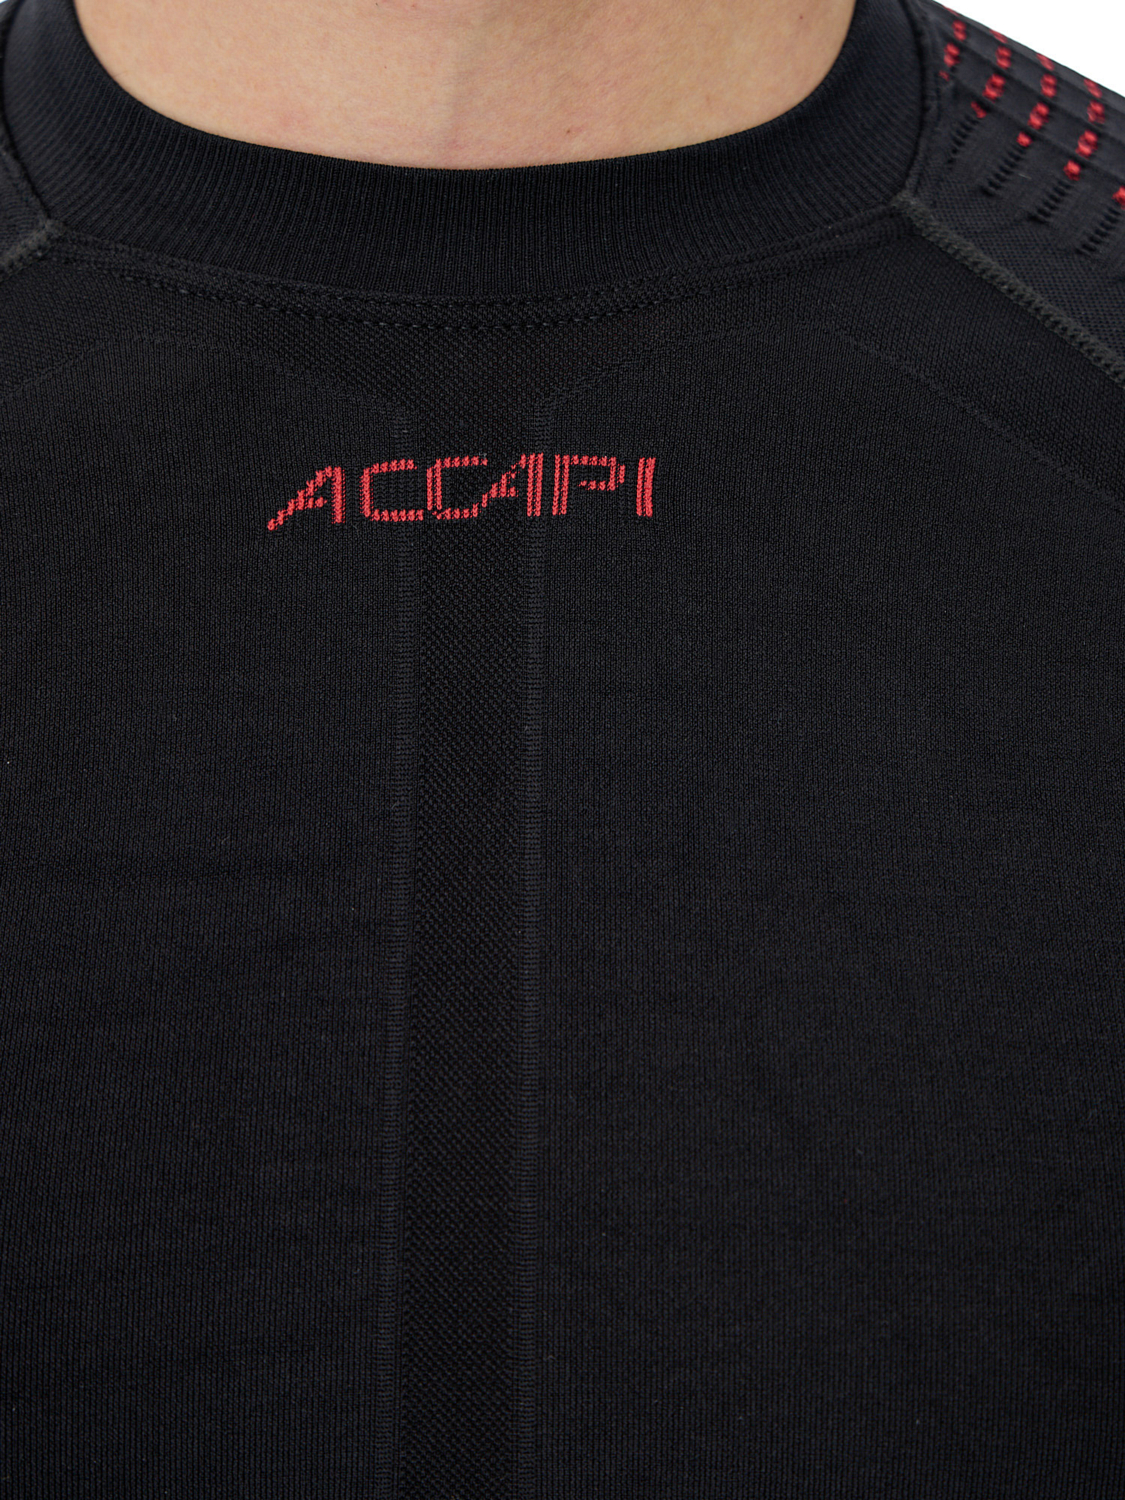 Футболка с длинным рукавом Accapi Synergy Long Sleeve Shirt Black/Red